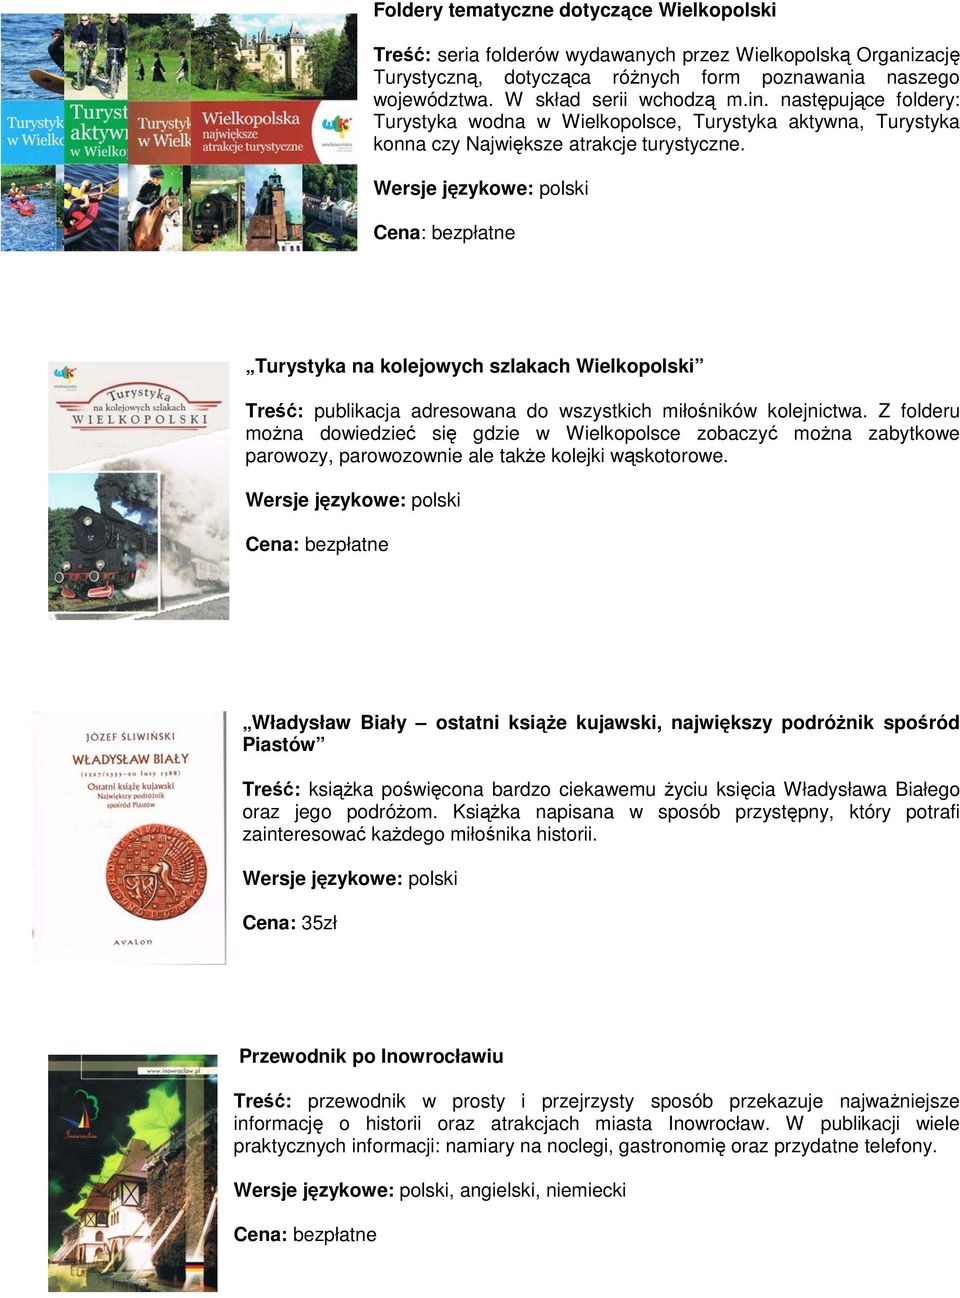 Turystyka na kolejowych szlakach Wielkopolski Treść: publikacja adresowana do wszystkich miłośników kolejnictwa.